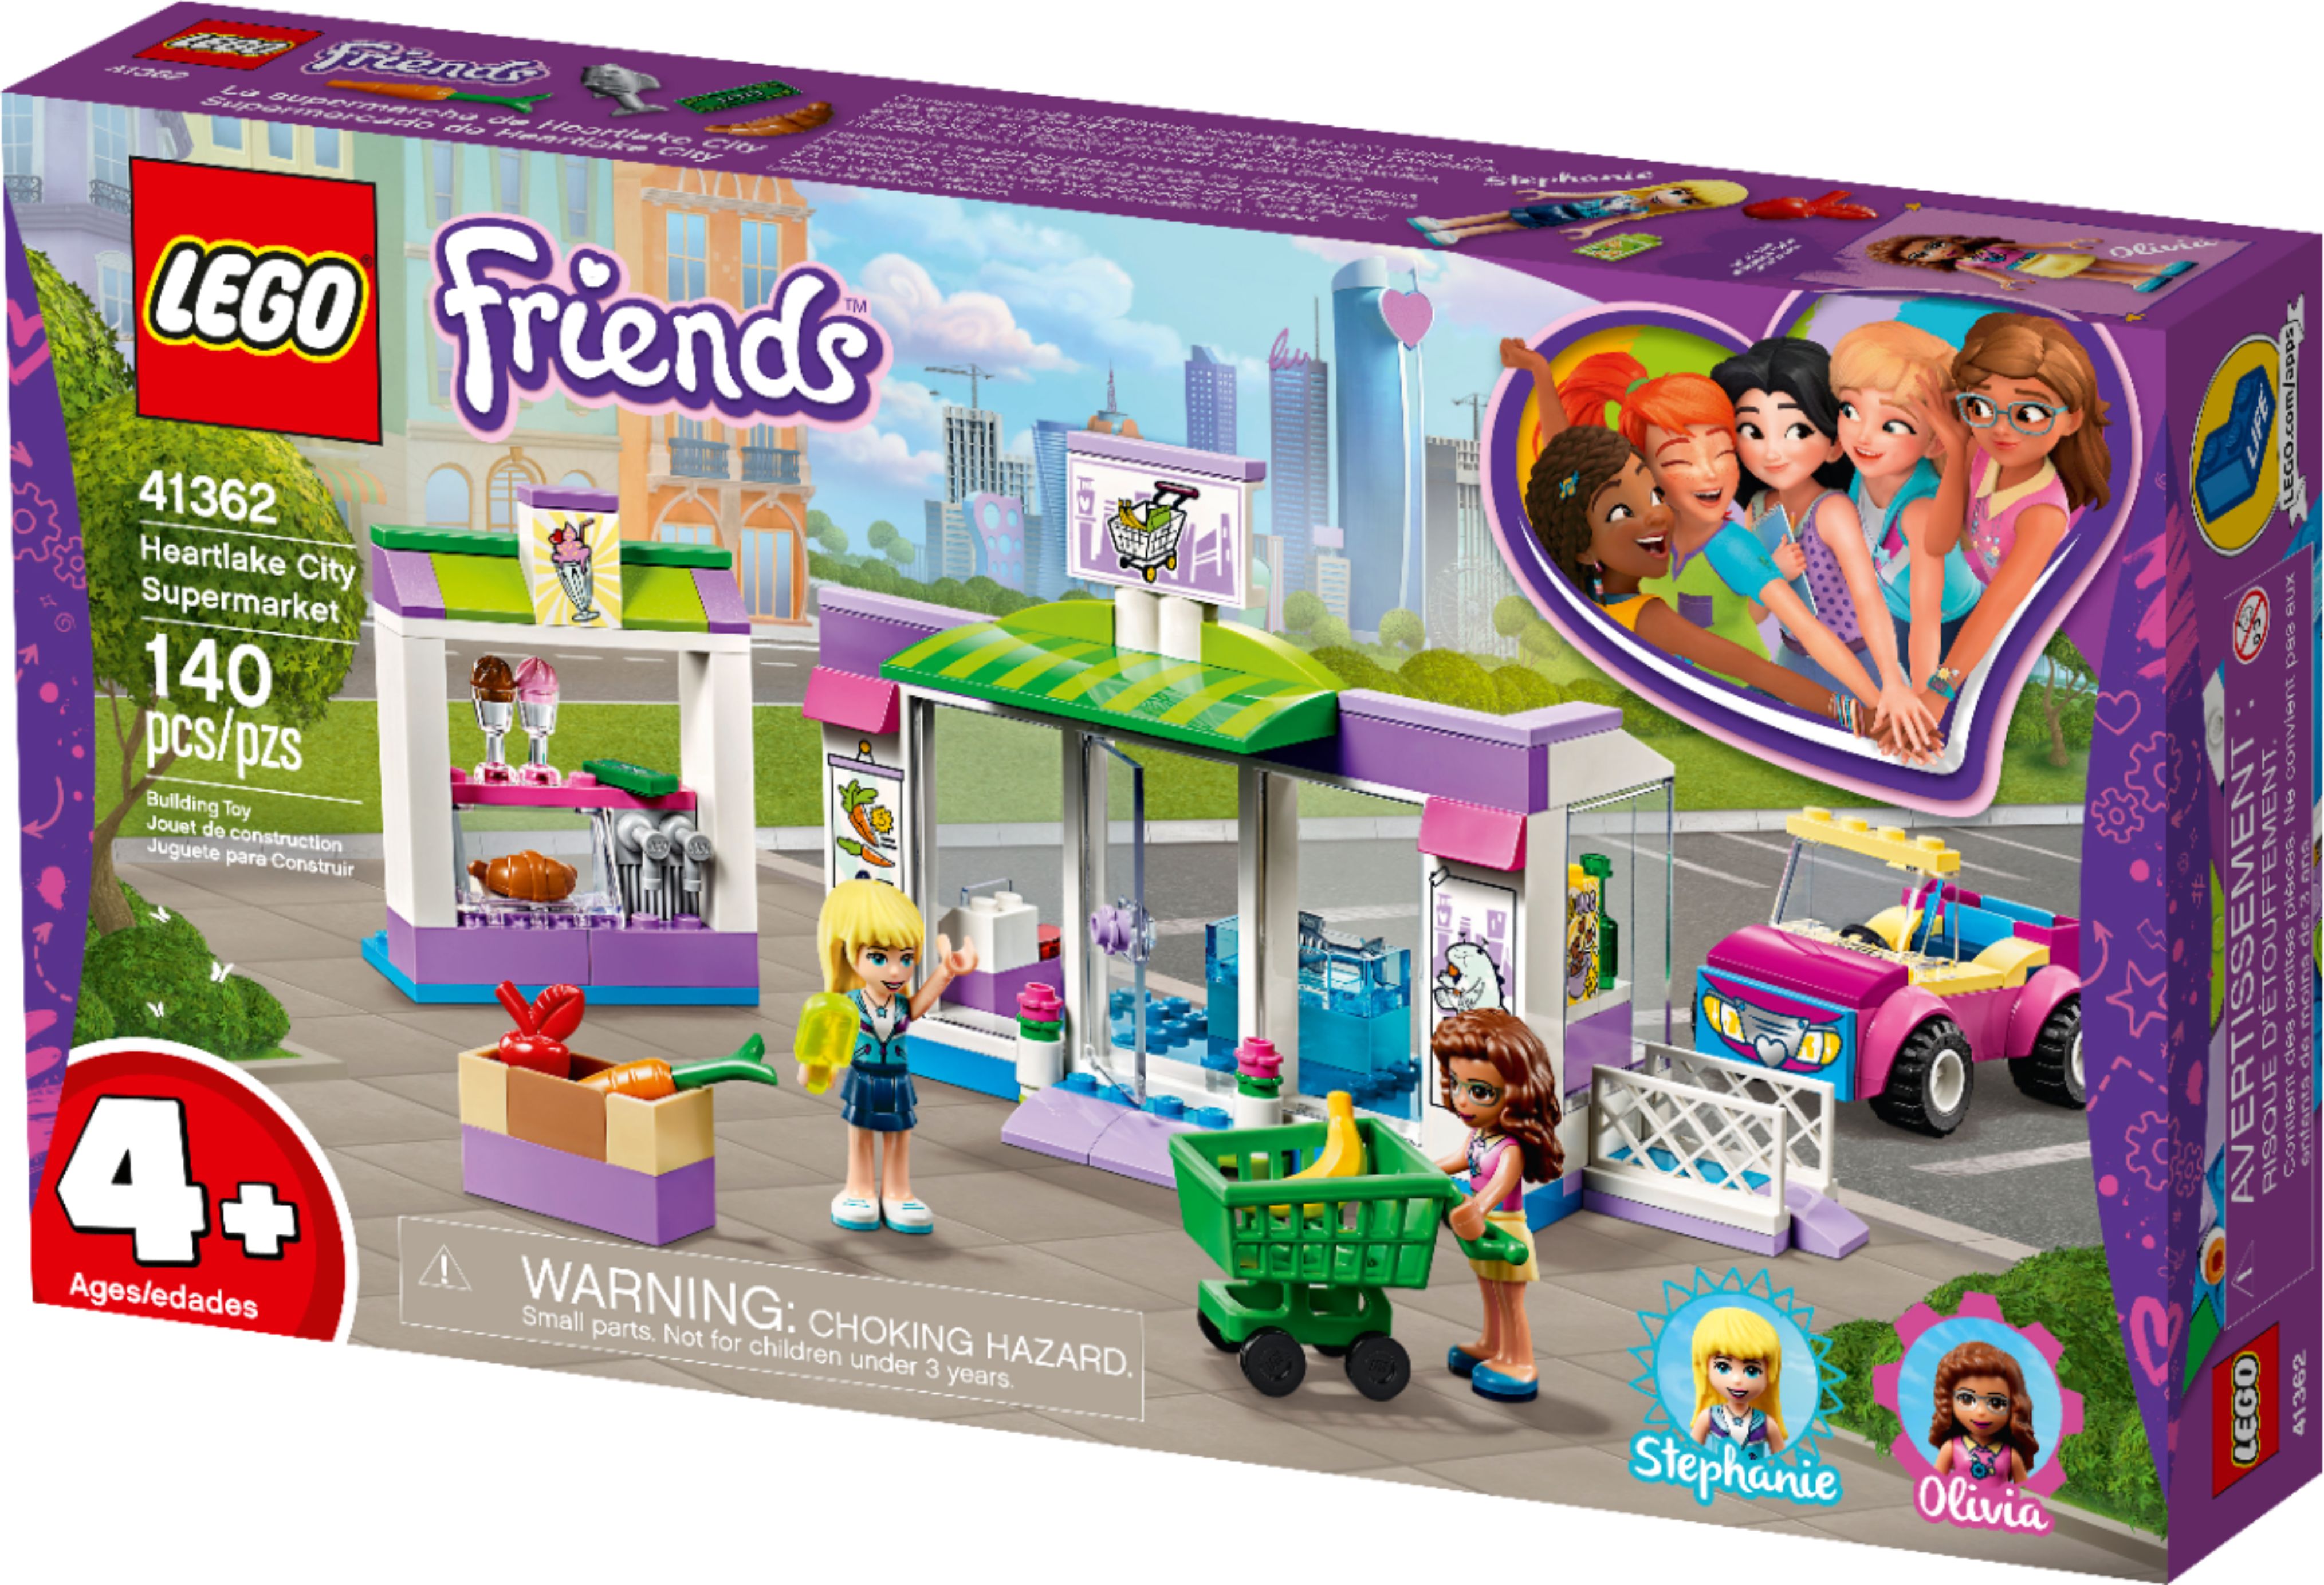 LEGO Friends Heartlake City Supermarket 41362 6251673 - Best Buy